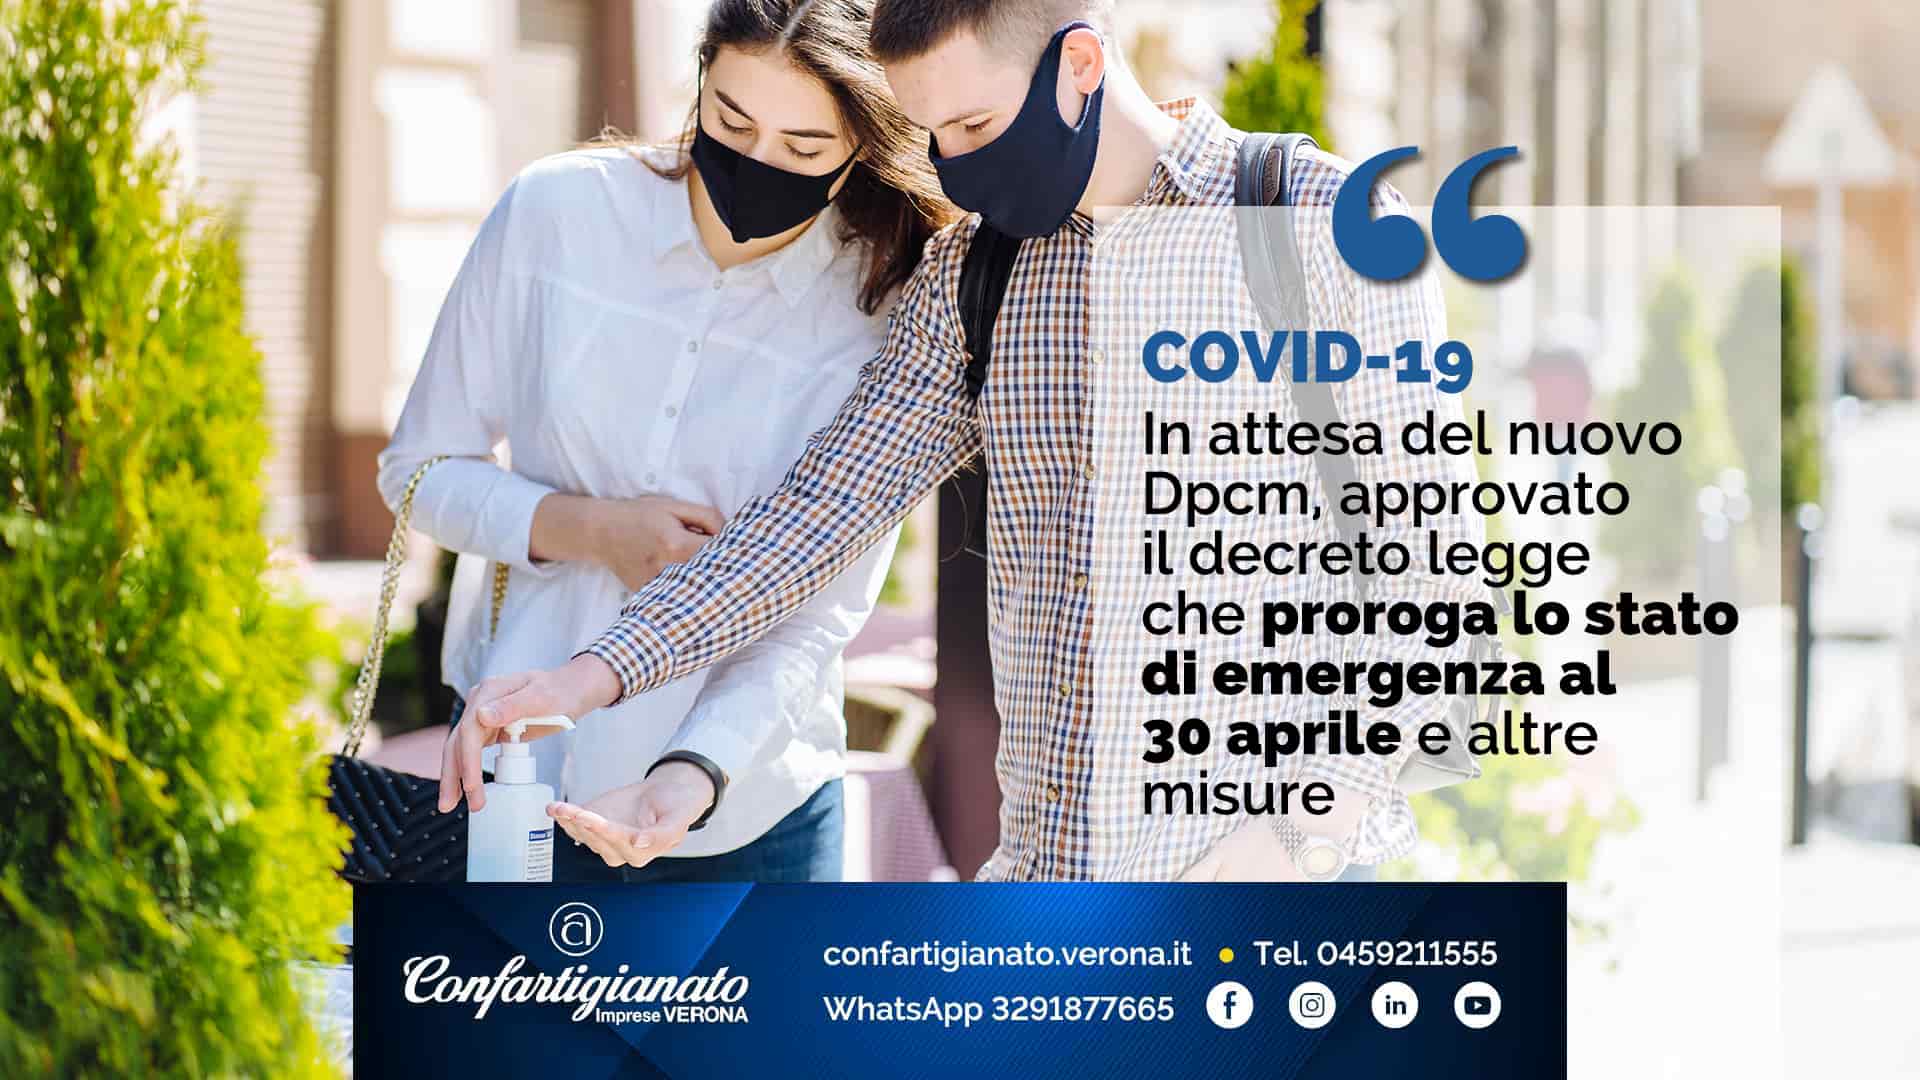 COVID-19 – In attesa del nuovo Dpcm, approvato decreto legge che proroga stato emergenza al 30 aprile e altre misure